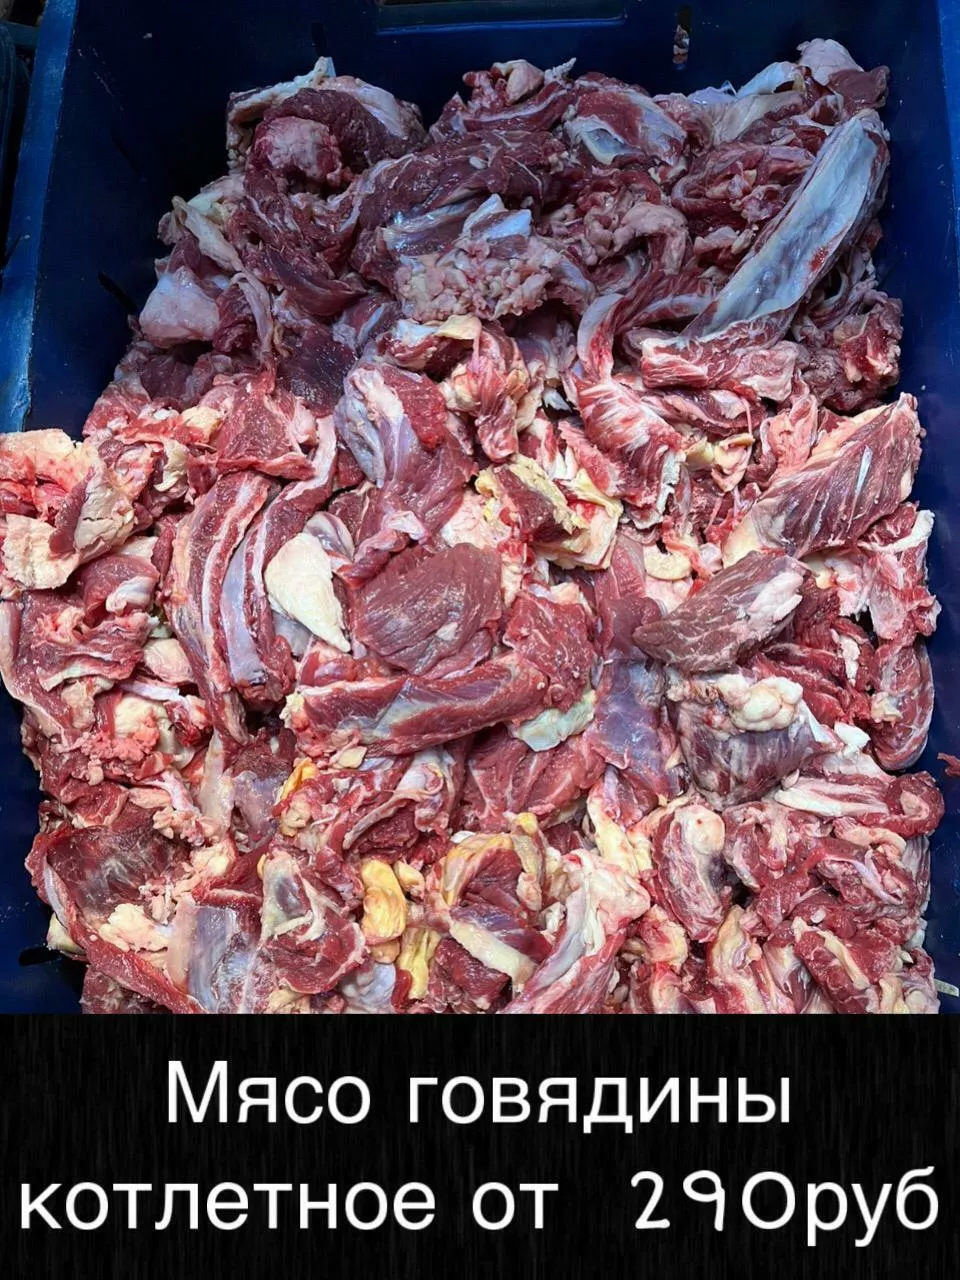 мясо оптом доставим до вашего региона в Братске 2